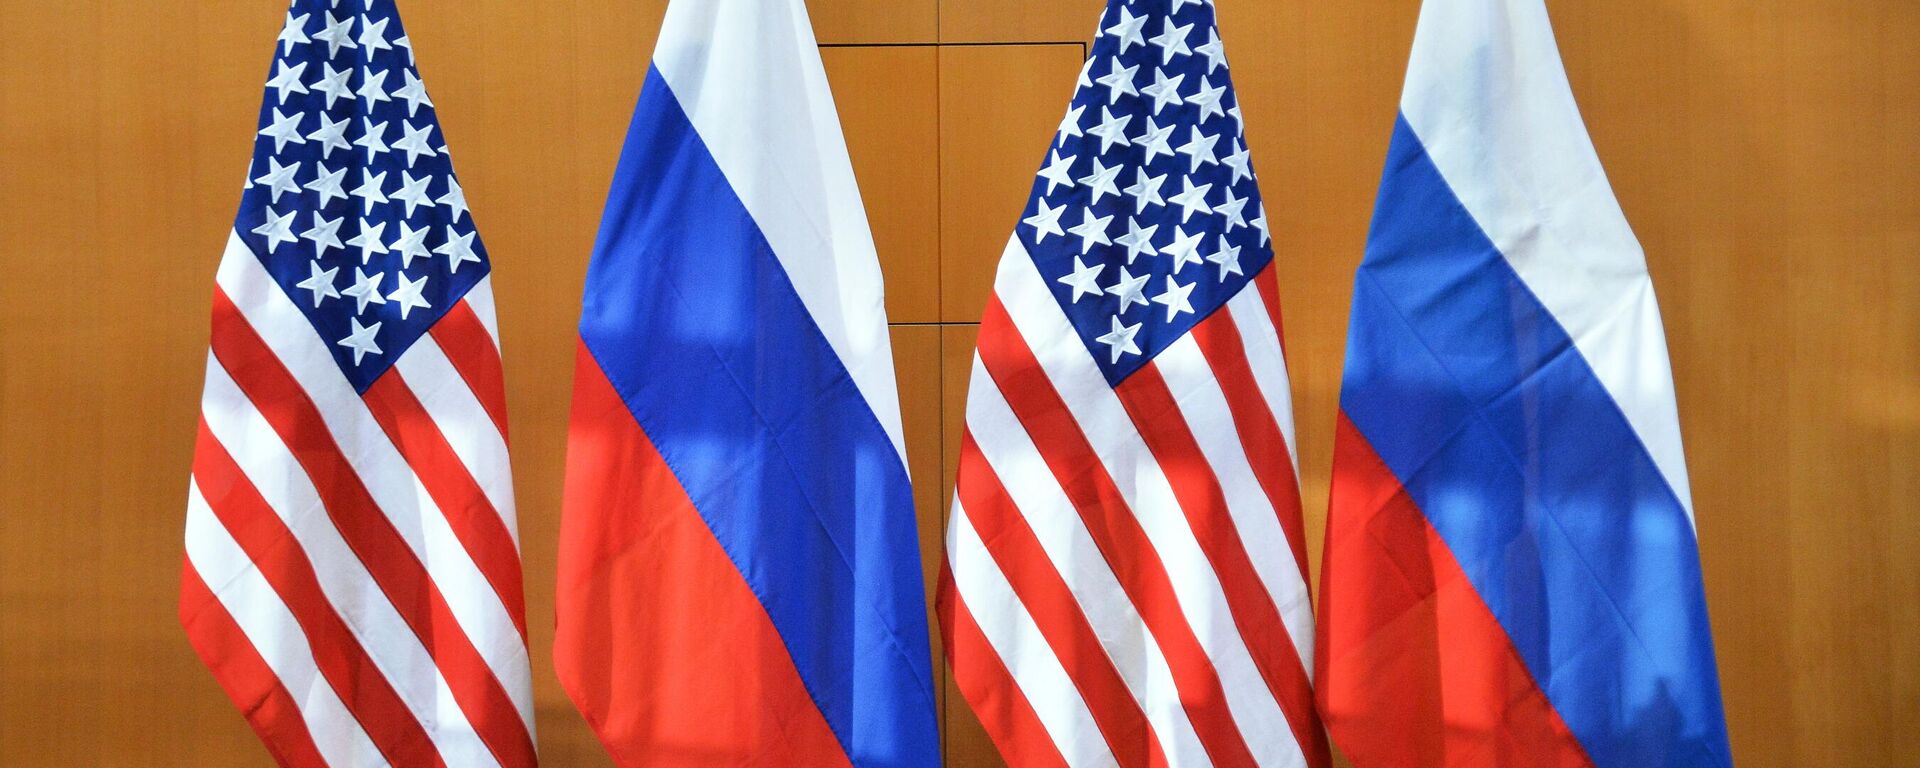 Em Genebra, na Suíça, as bandeiras dos EUA e da Rússia aparecem alinhadas durante encontro de representantes dos dois países em 10 de janeiro de 2022 - Sputnik Brasil, 1920, 02.02.2022